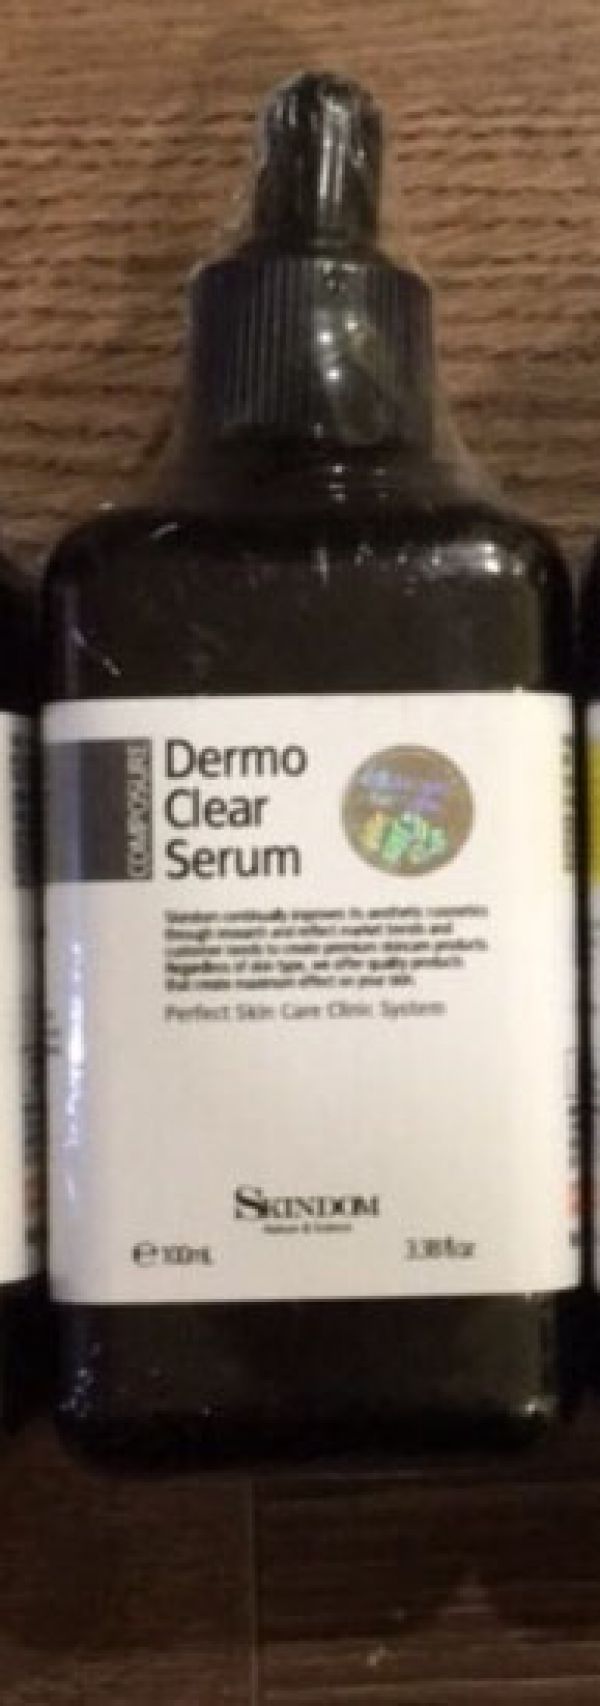 Dermo Clear Serum Skindom 100ml